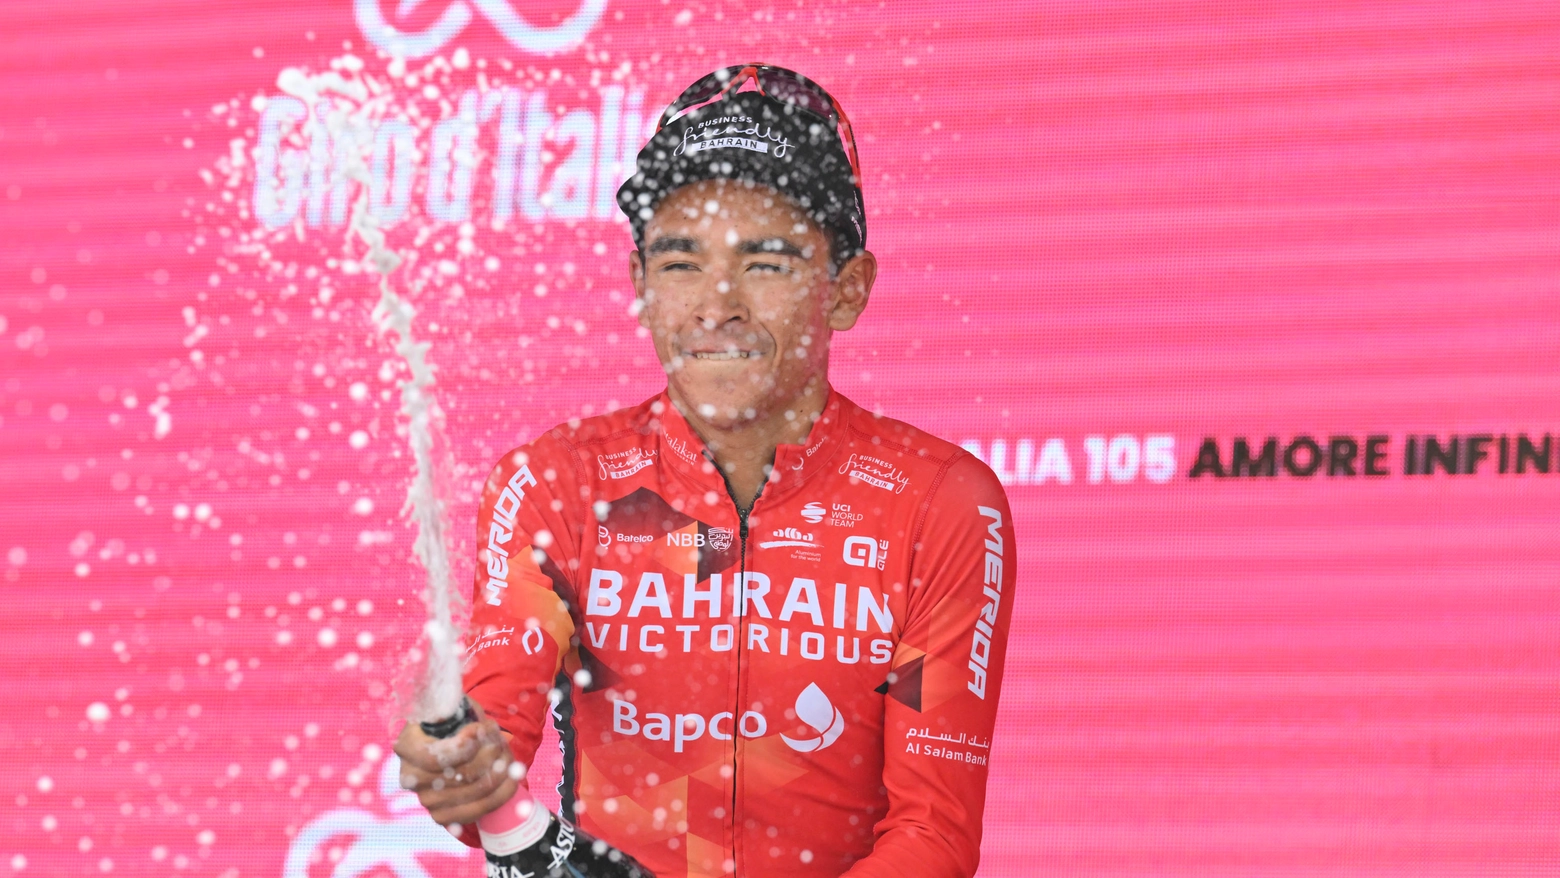 Giro d'Italia 2023, tappa 19: Buitrago trionfa sulle Tre Cime di Lavaredo. Ordine d'arrivo e classifica generale